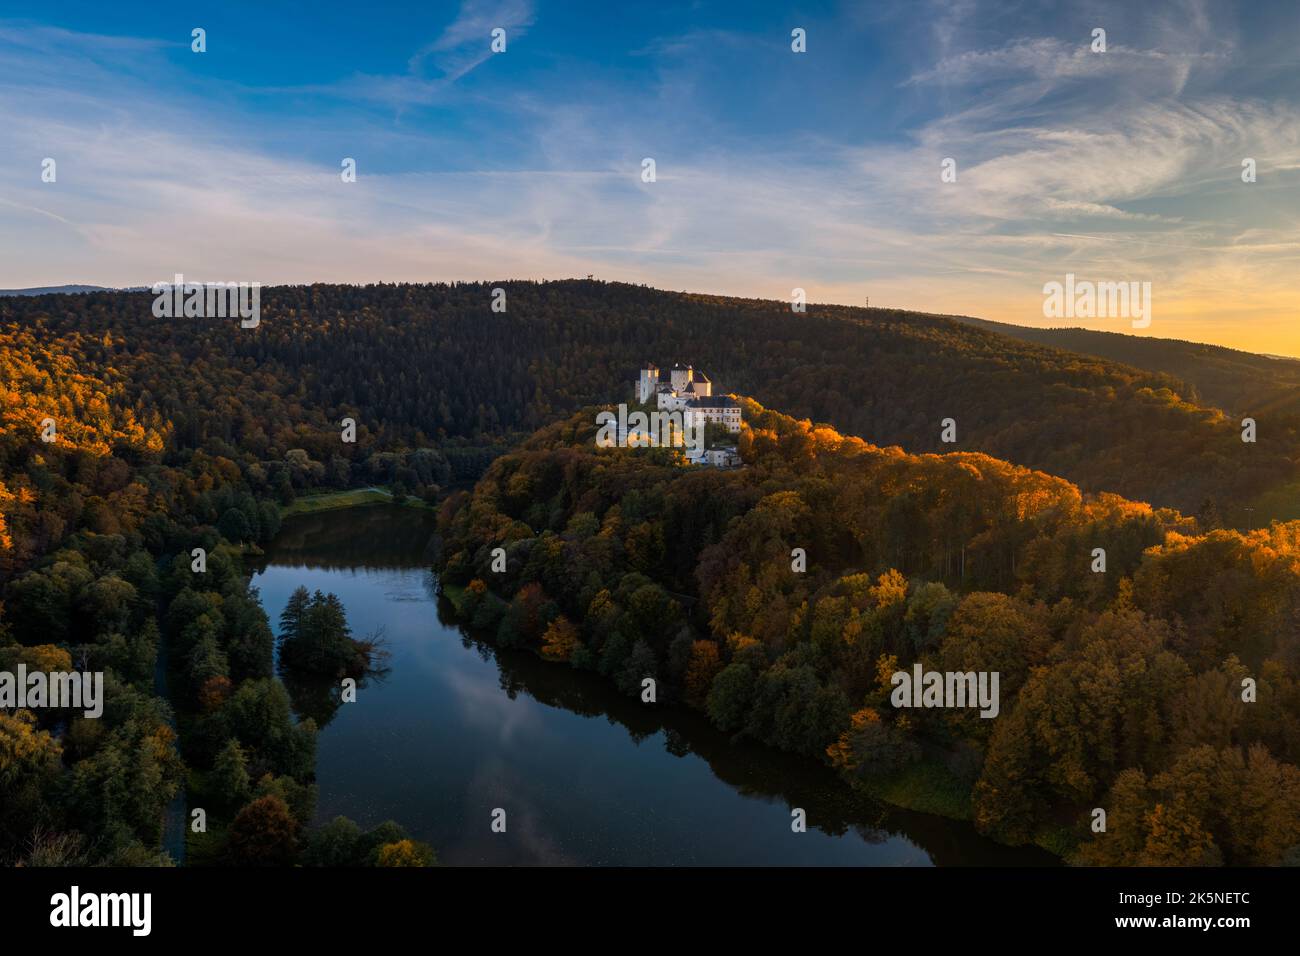 Lockenhaus, Austria - 7 October, 2022: view of the Burg Lockenhaus Castle in the Burgenland region of Austria Stock Photo